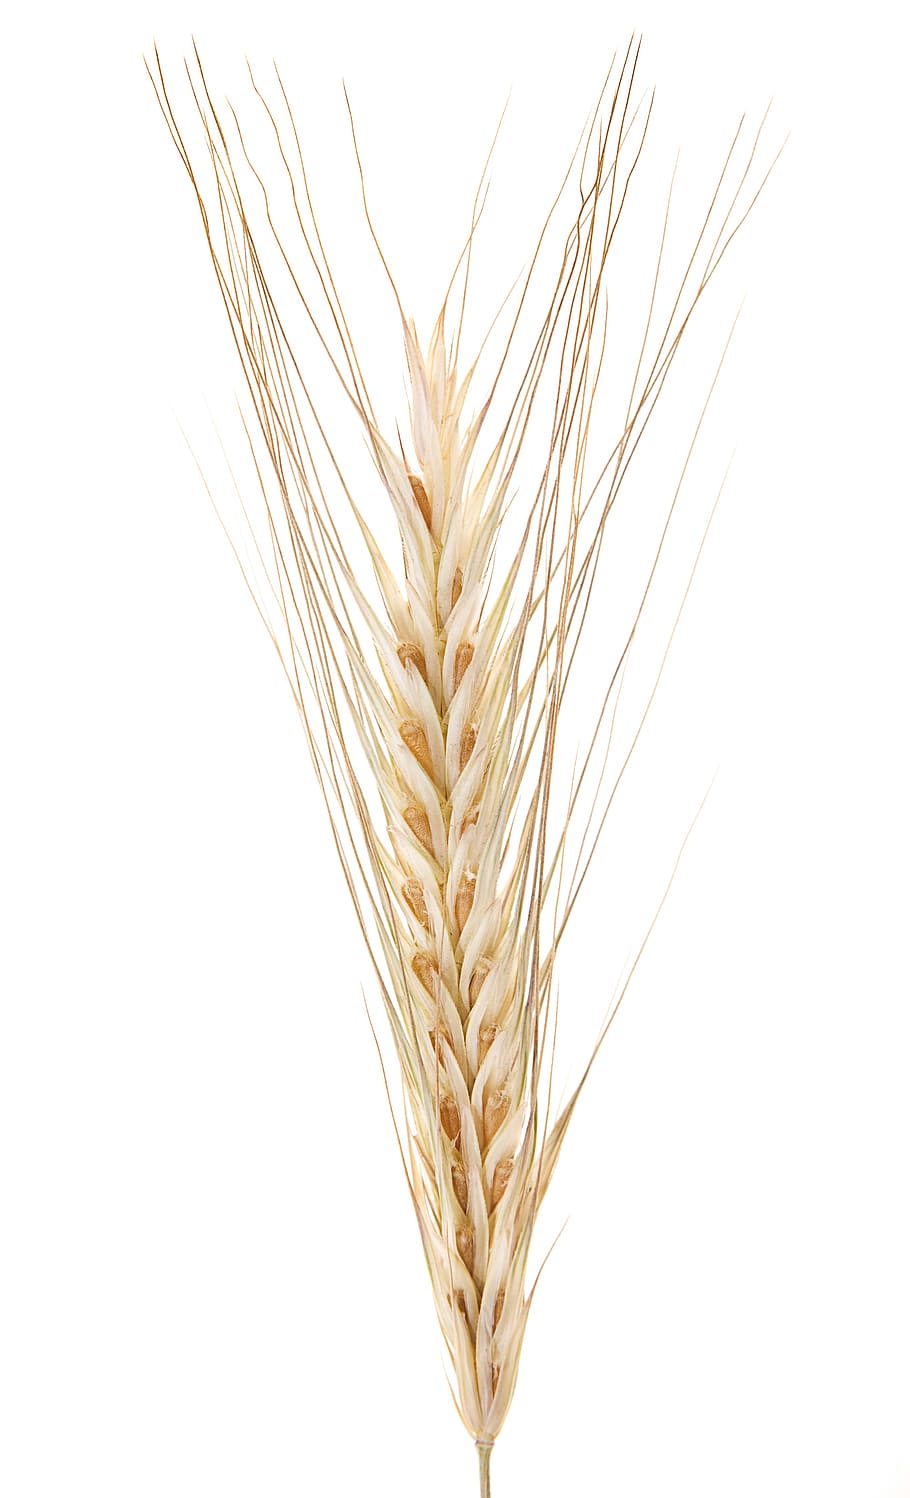 trigo branco, fundo branco, tiro do estúdio, close-up, colheita, plantar, planta de cereal, trigo, agricultura, ninguém